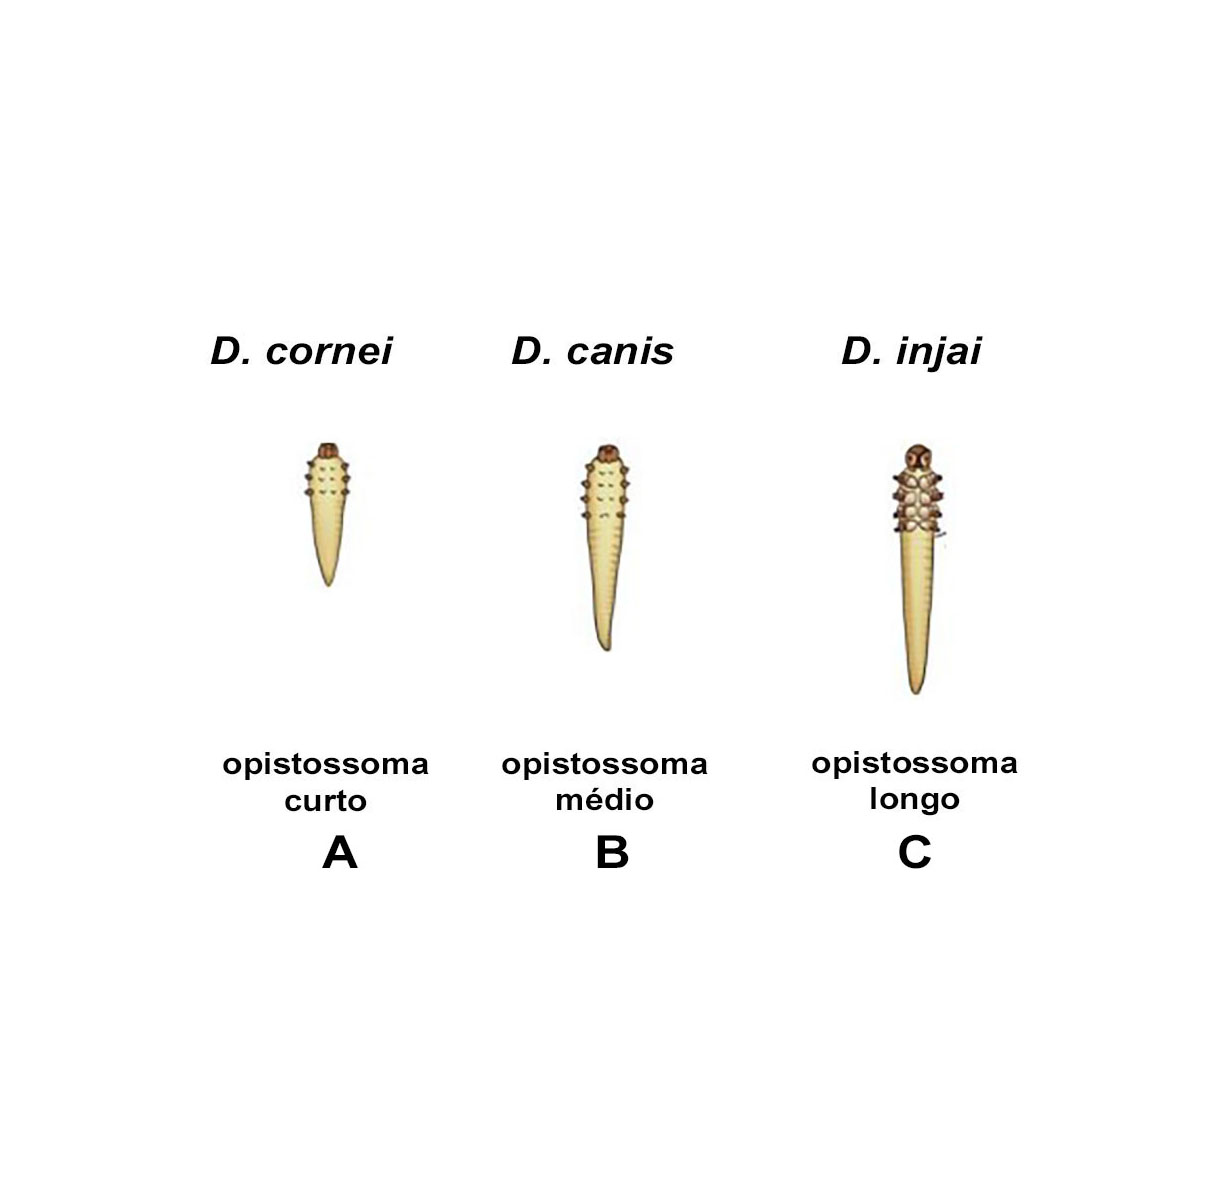 Três espécies morfologicamente distintas do ácaro Demodex spp.: A) D. cornei, B) D. canis (B) e C) D. injai. Créditos: Gabriela Rezende 